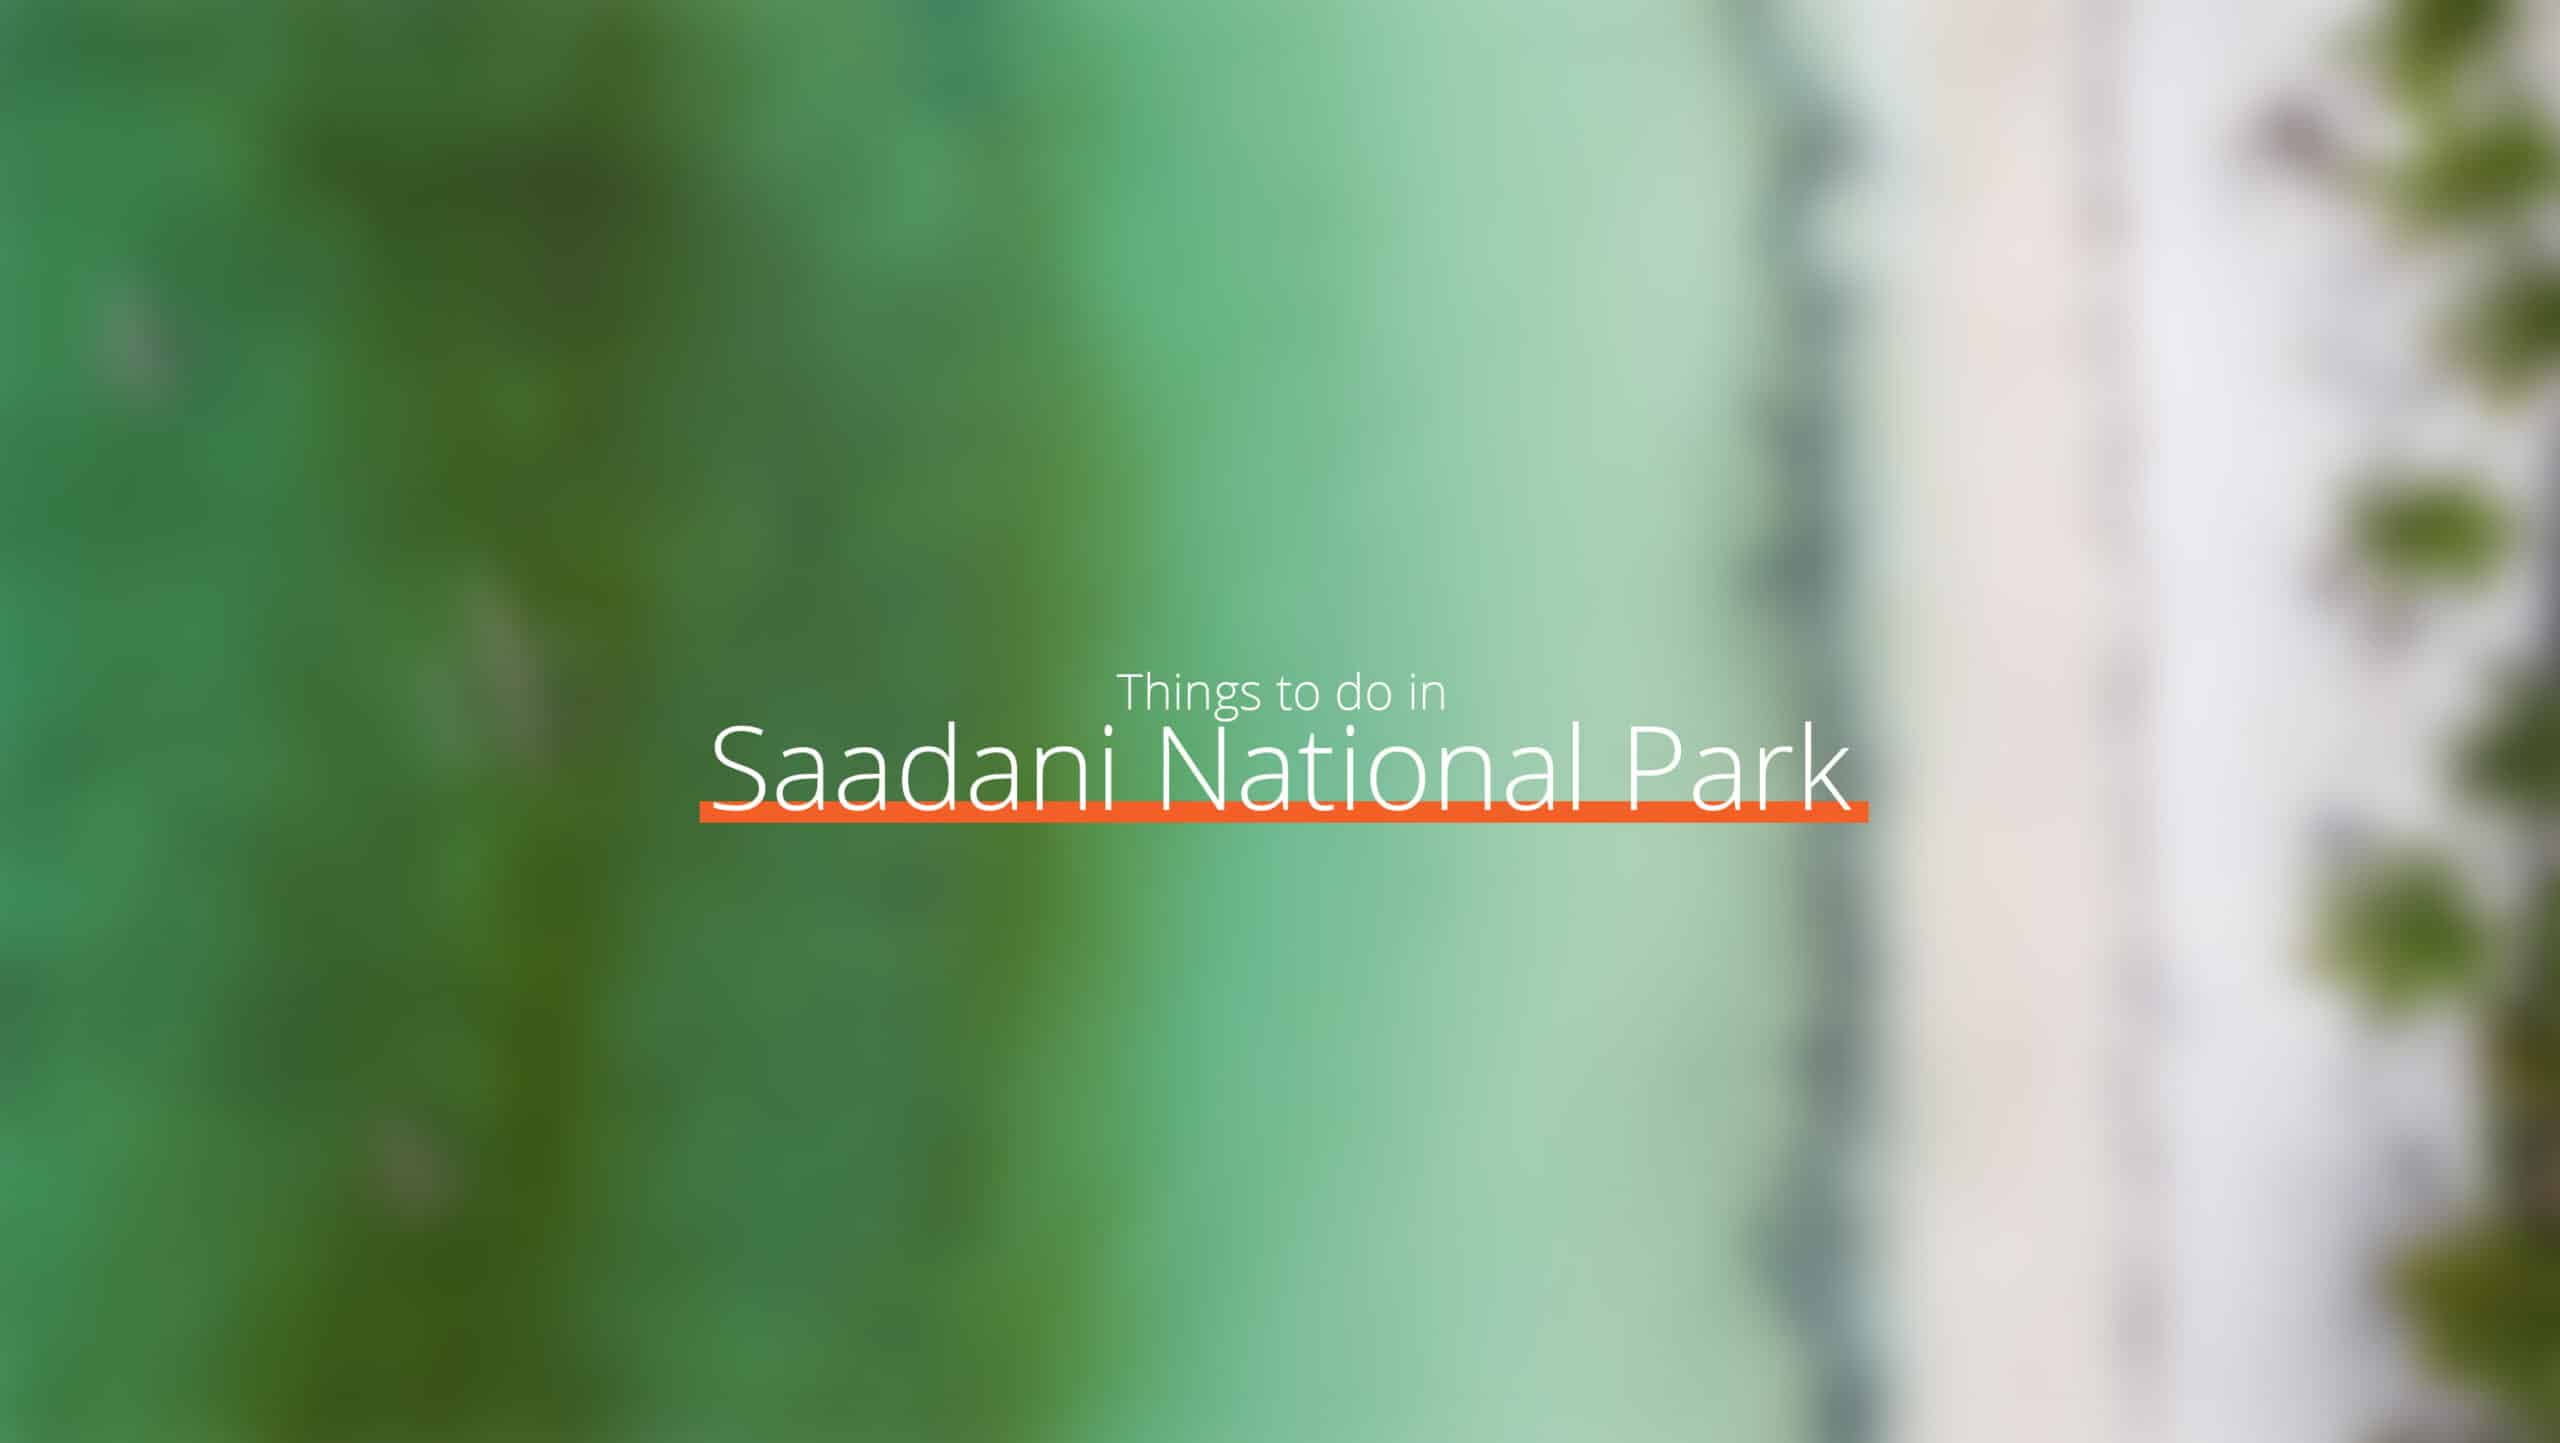 坦桑尼亚 - 萨达尼国家公园规模扩大 - 西部赛道的去处